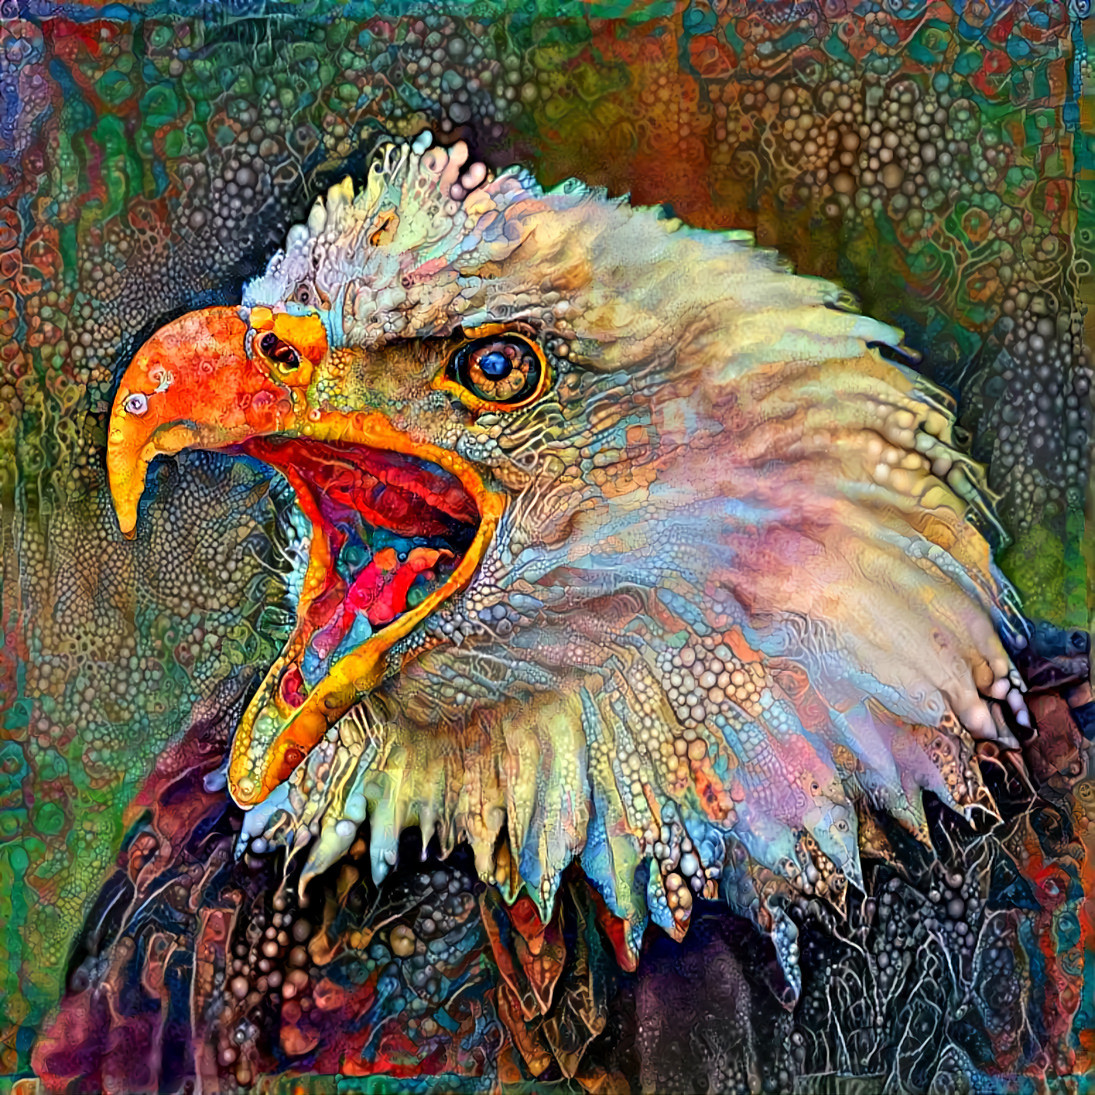 Screamin' Eagle